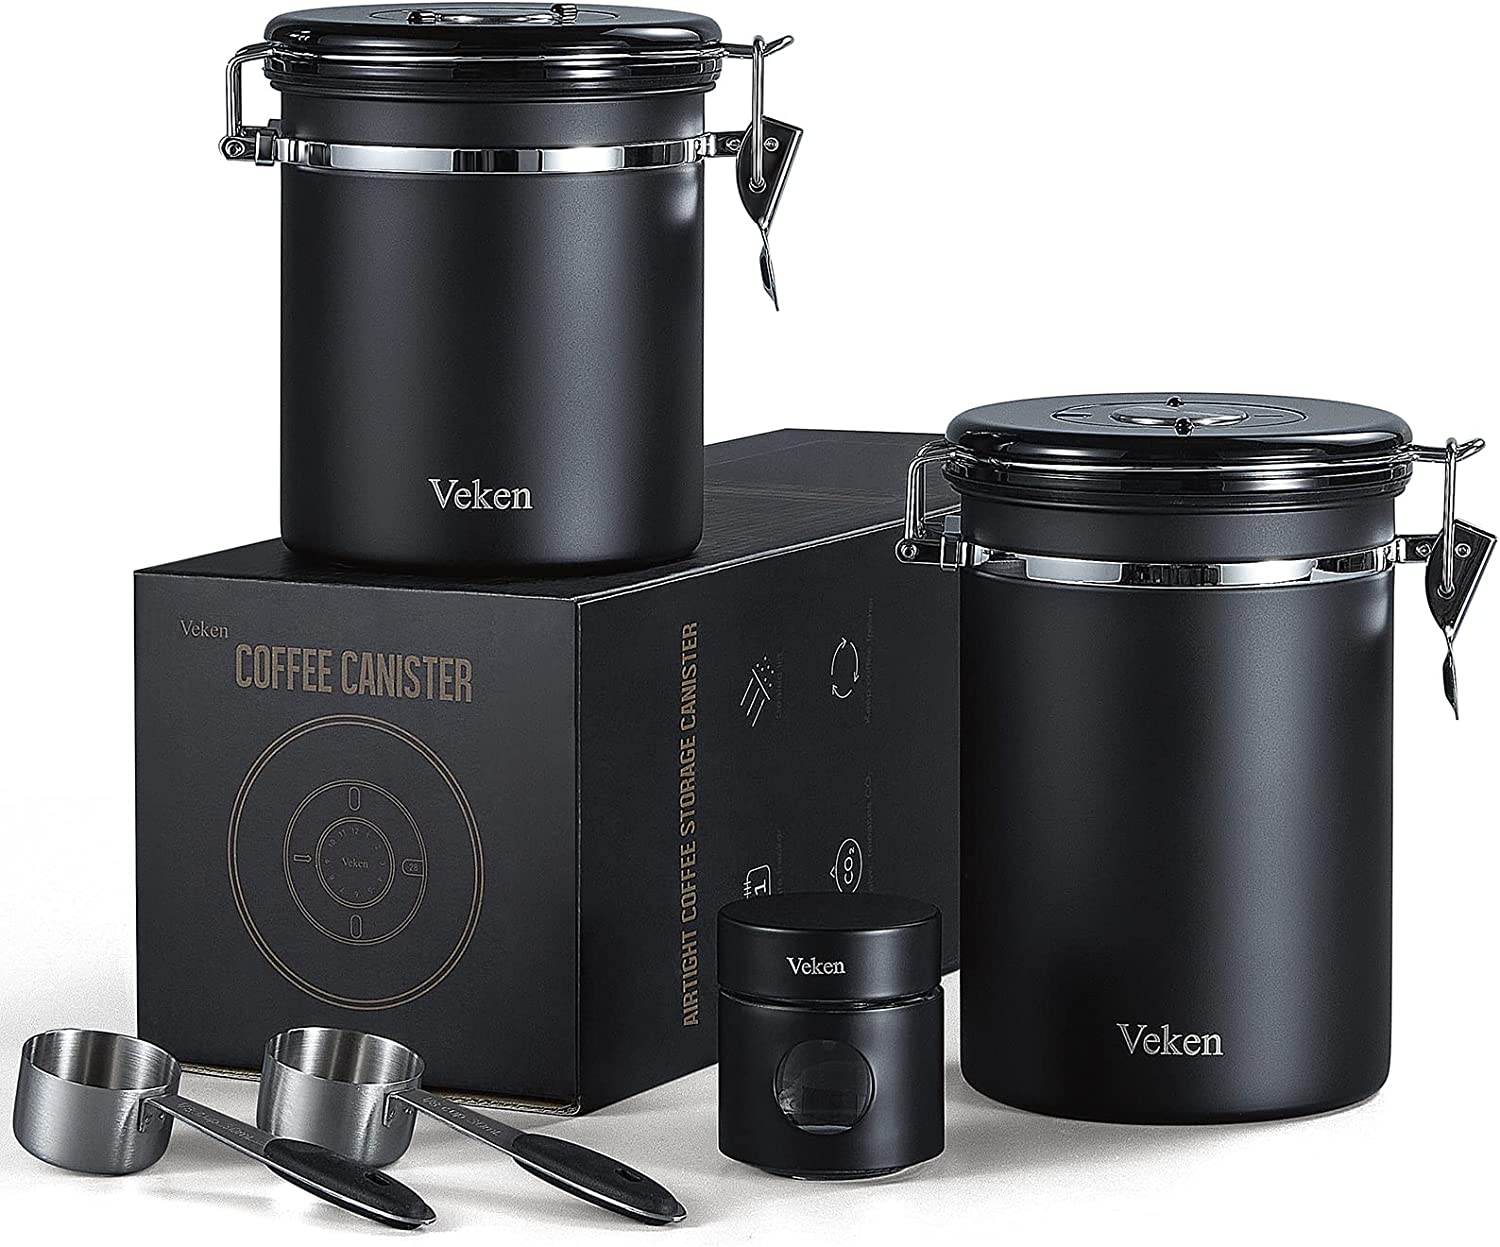 Veken Coffee Canister, Stainless Steel, 22OZ, Gray, Veken